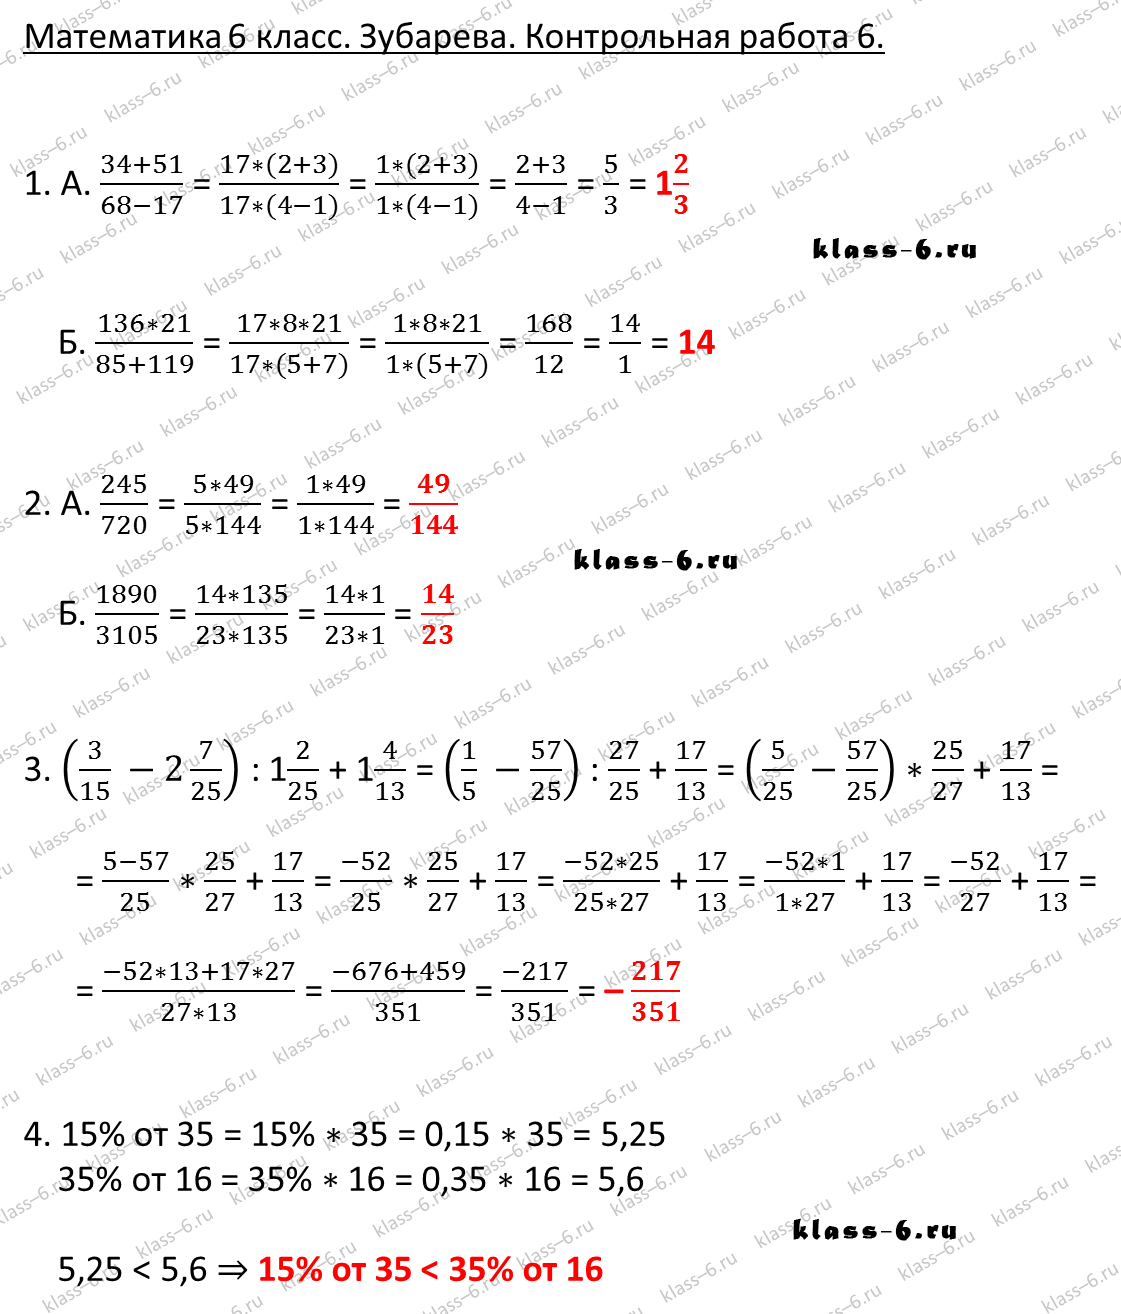 гдз математика Зубарева 6 класс ответ и подробное решение с объяснениями контрольной работы № 6